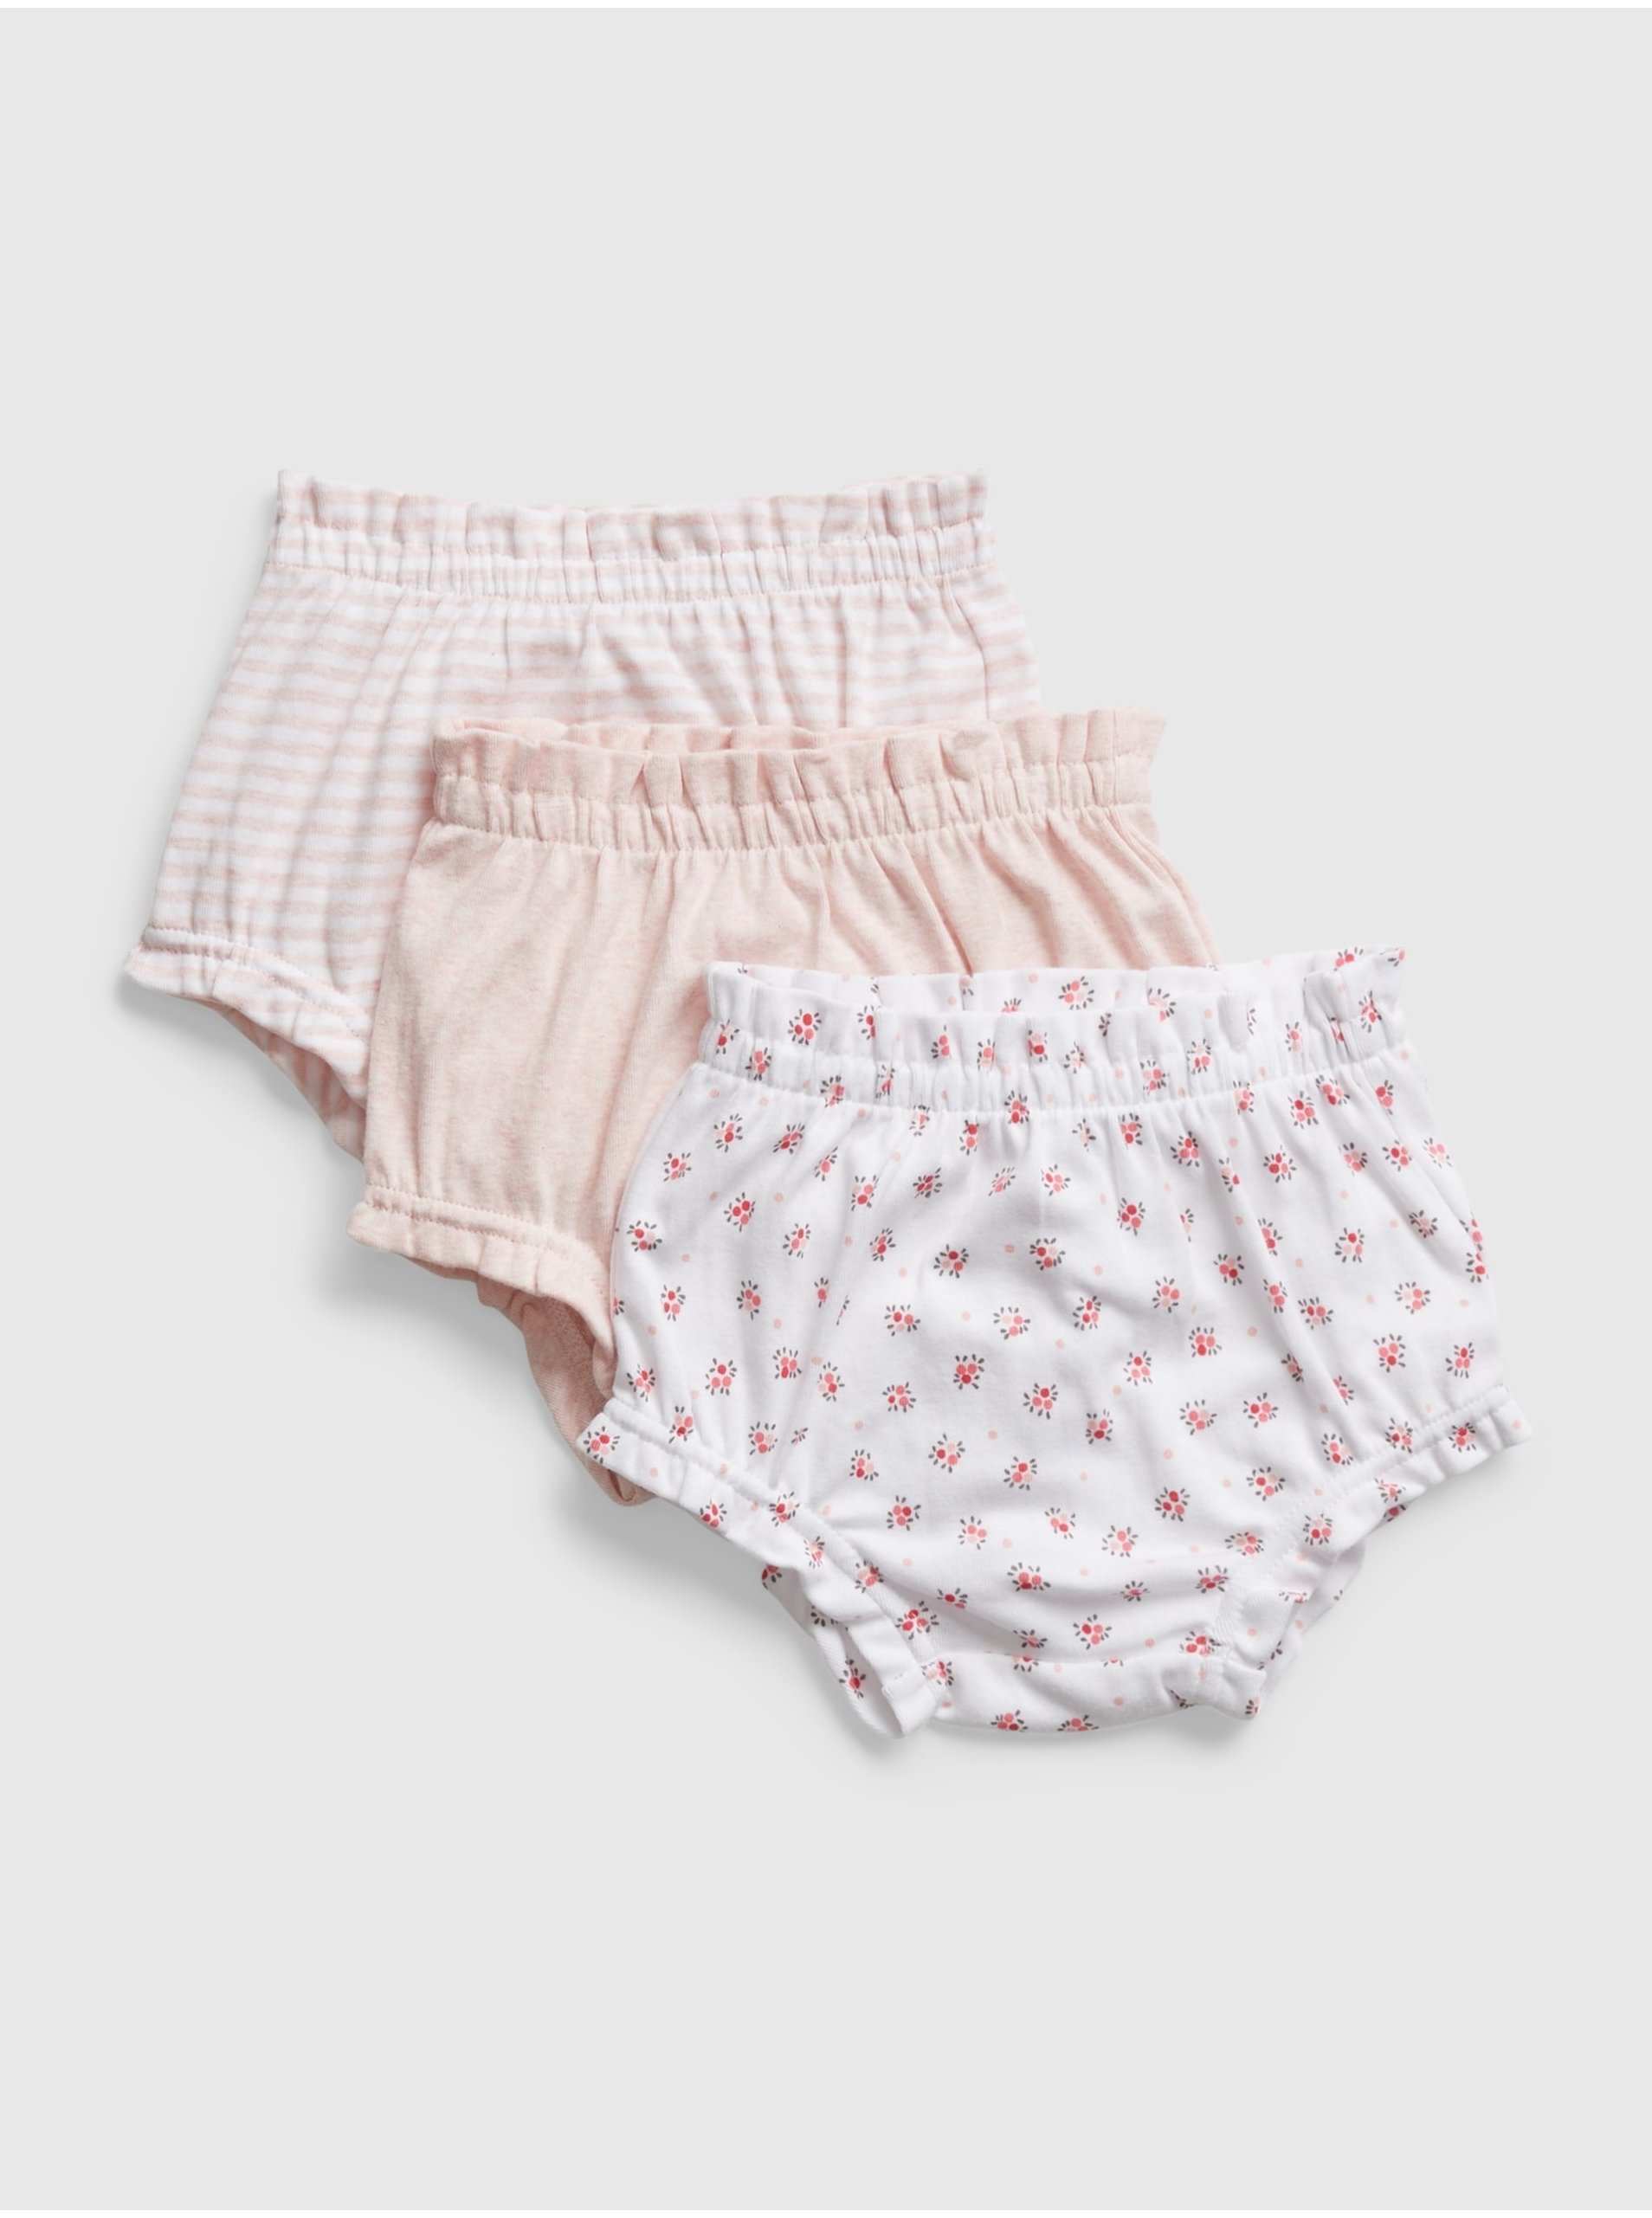 Lacno Ružové dievčenské šortky naťahovacie GAP, 3ks